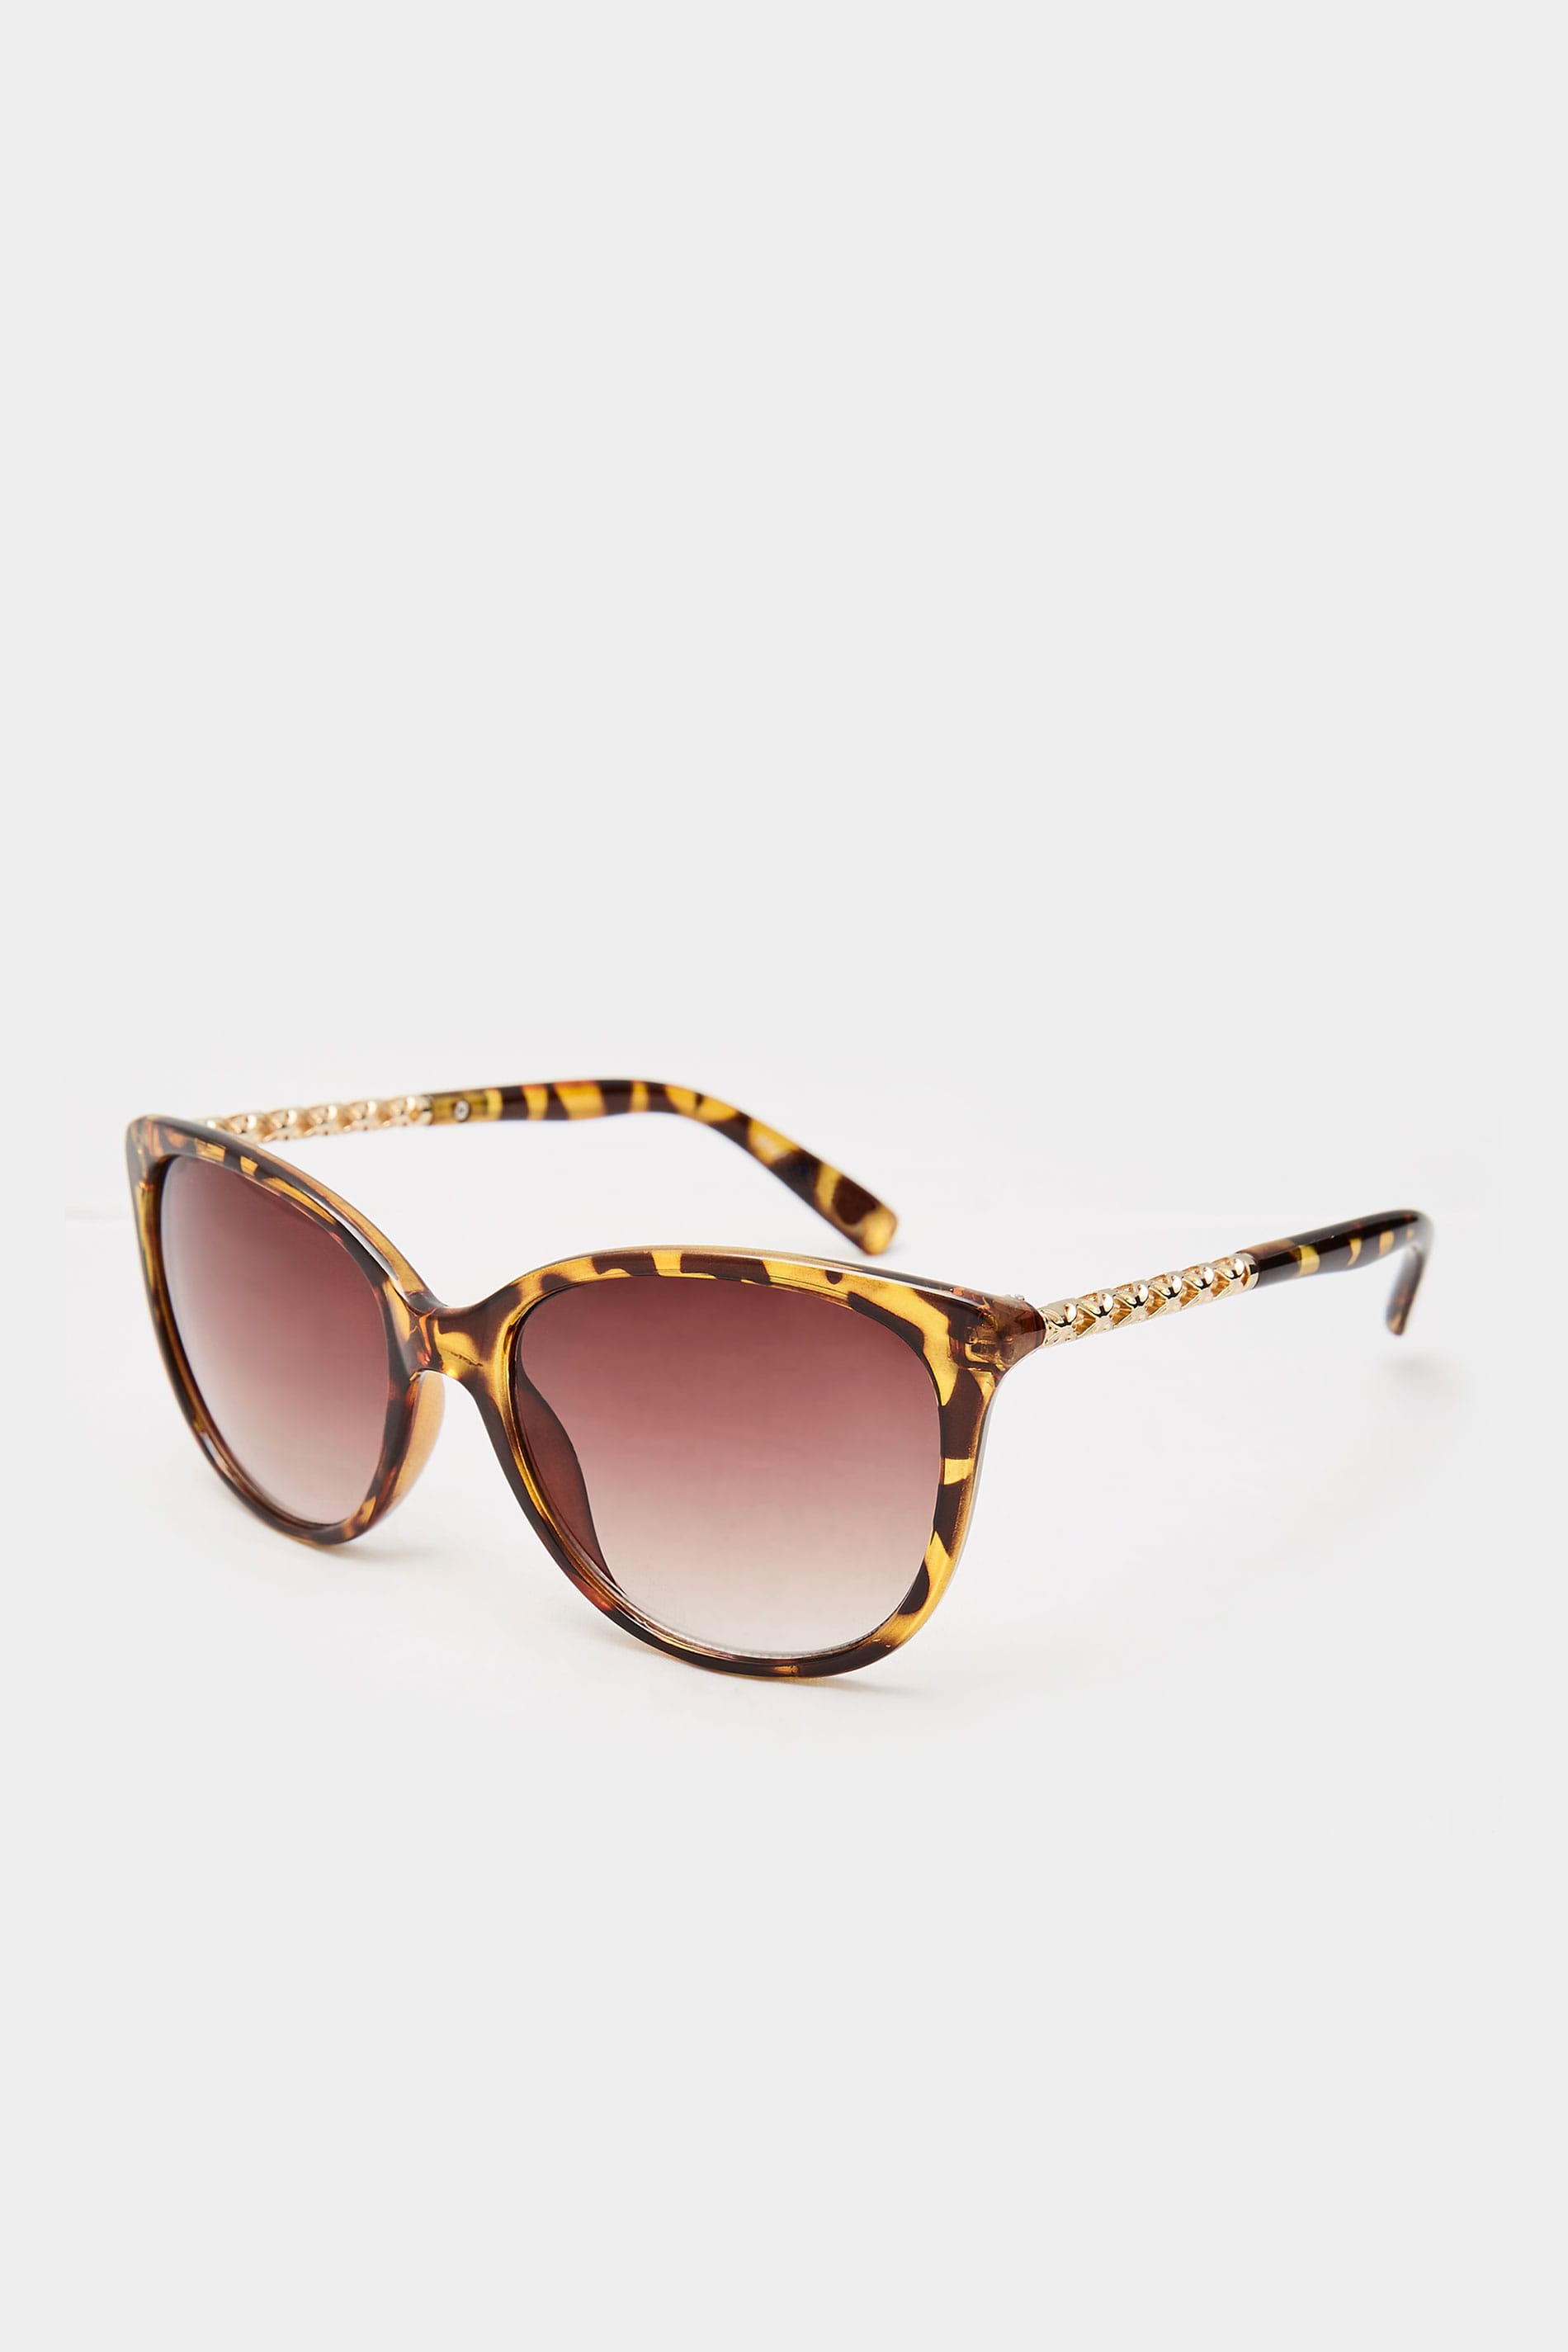 Brown Tortoiseshell Cat-Eye Chain Sunglasses | Yours Clothing 1